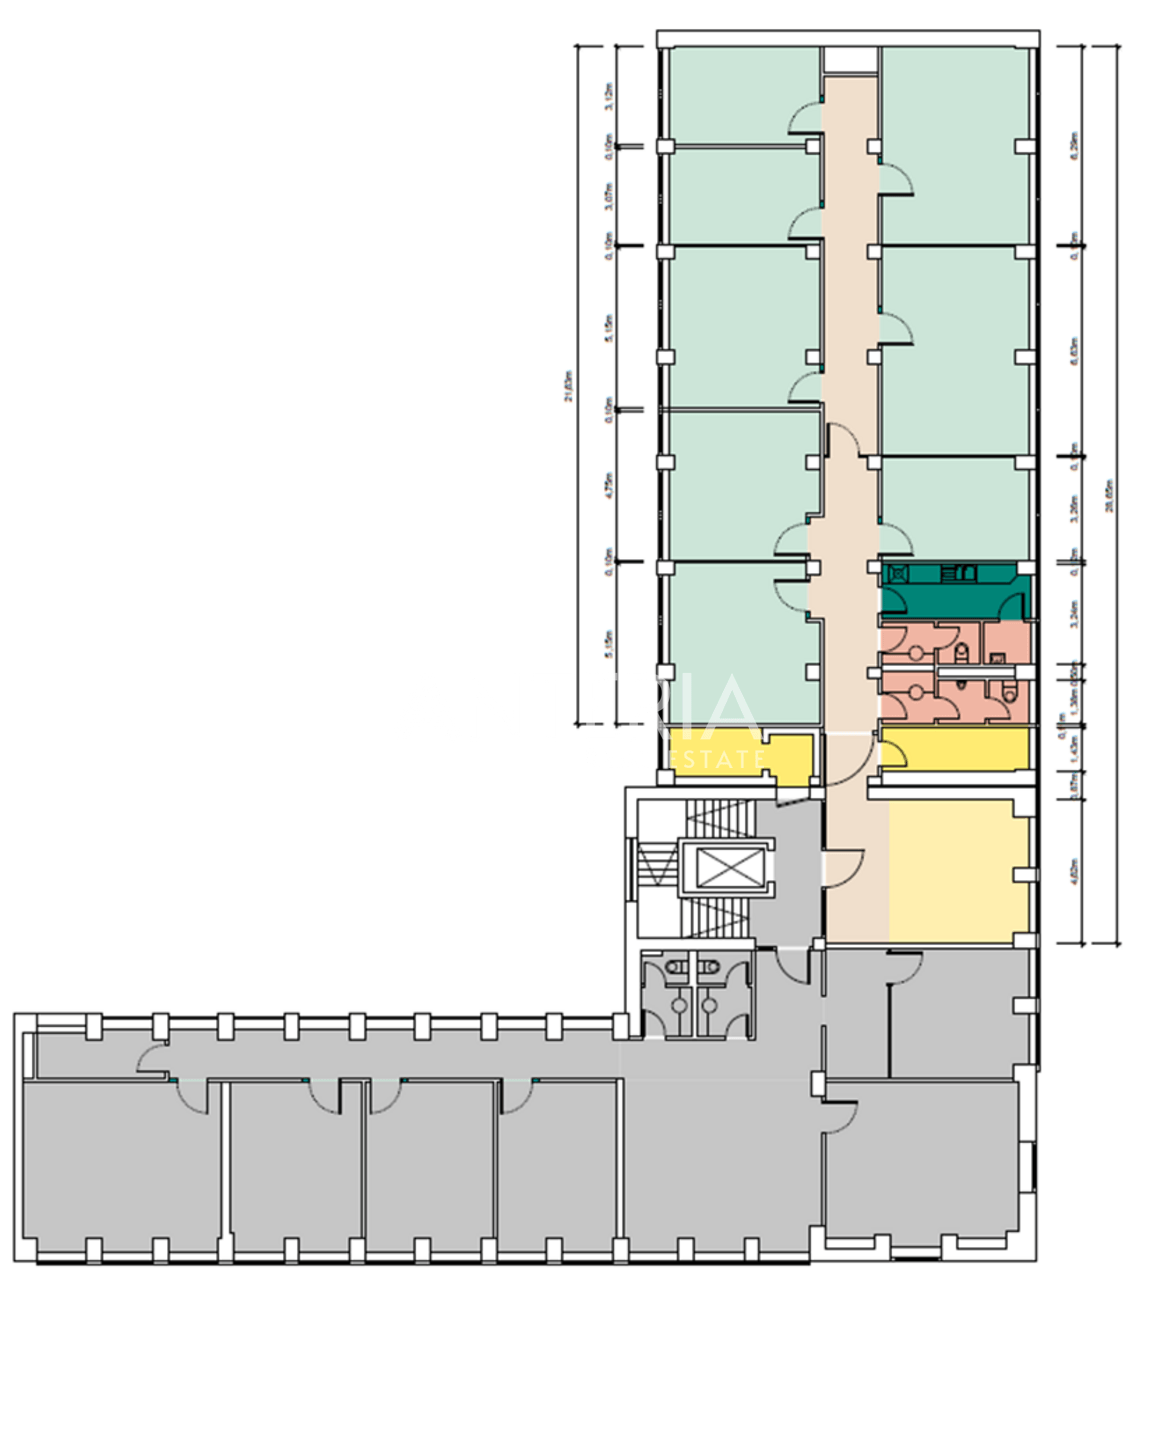 Grundriss 2.OG verfügbare Einheit links ca. 295 m2 (farbig), rechts ca. 261,98 m2 (grau)